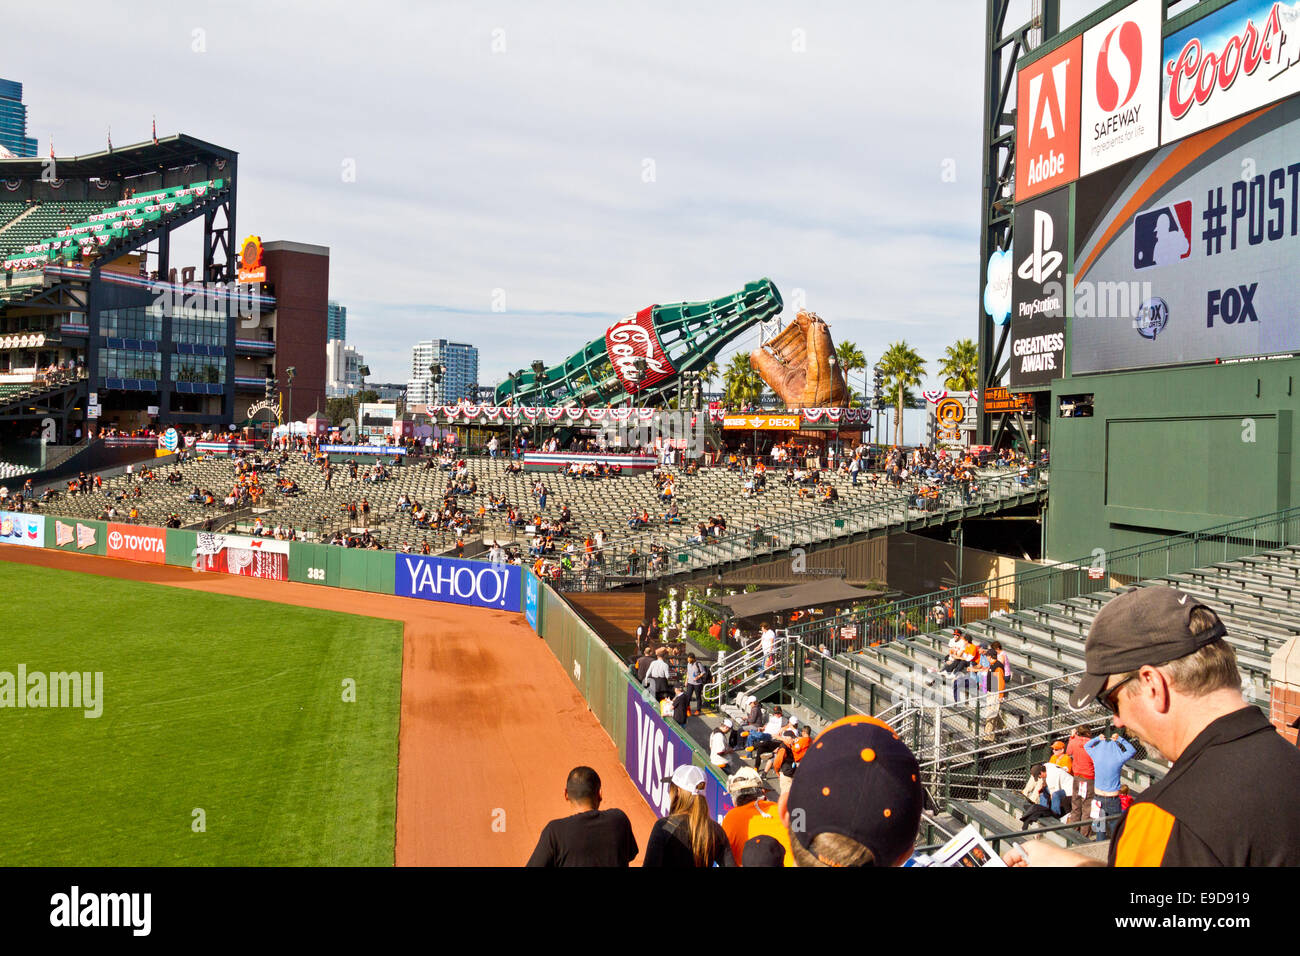 Linken Feld steht im AT&T Park, Heimat der San Francisco Giants Baseballteam Stockfoto